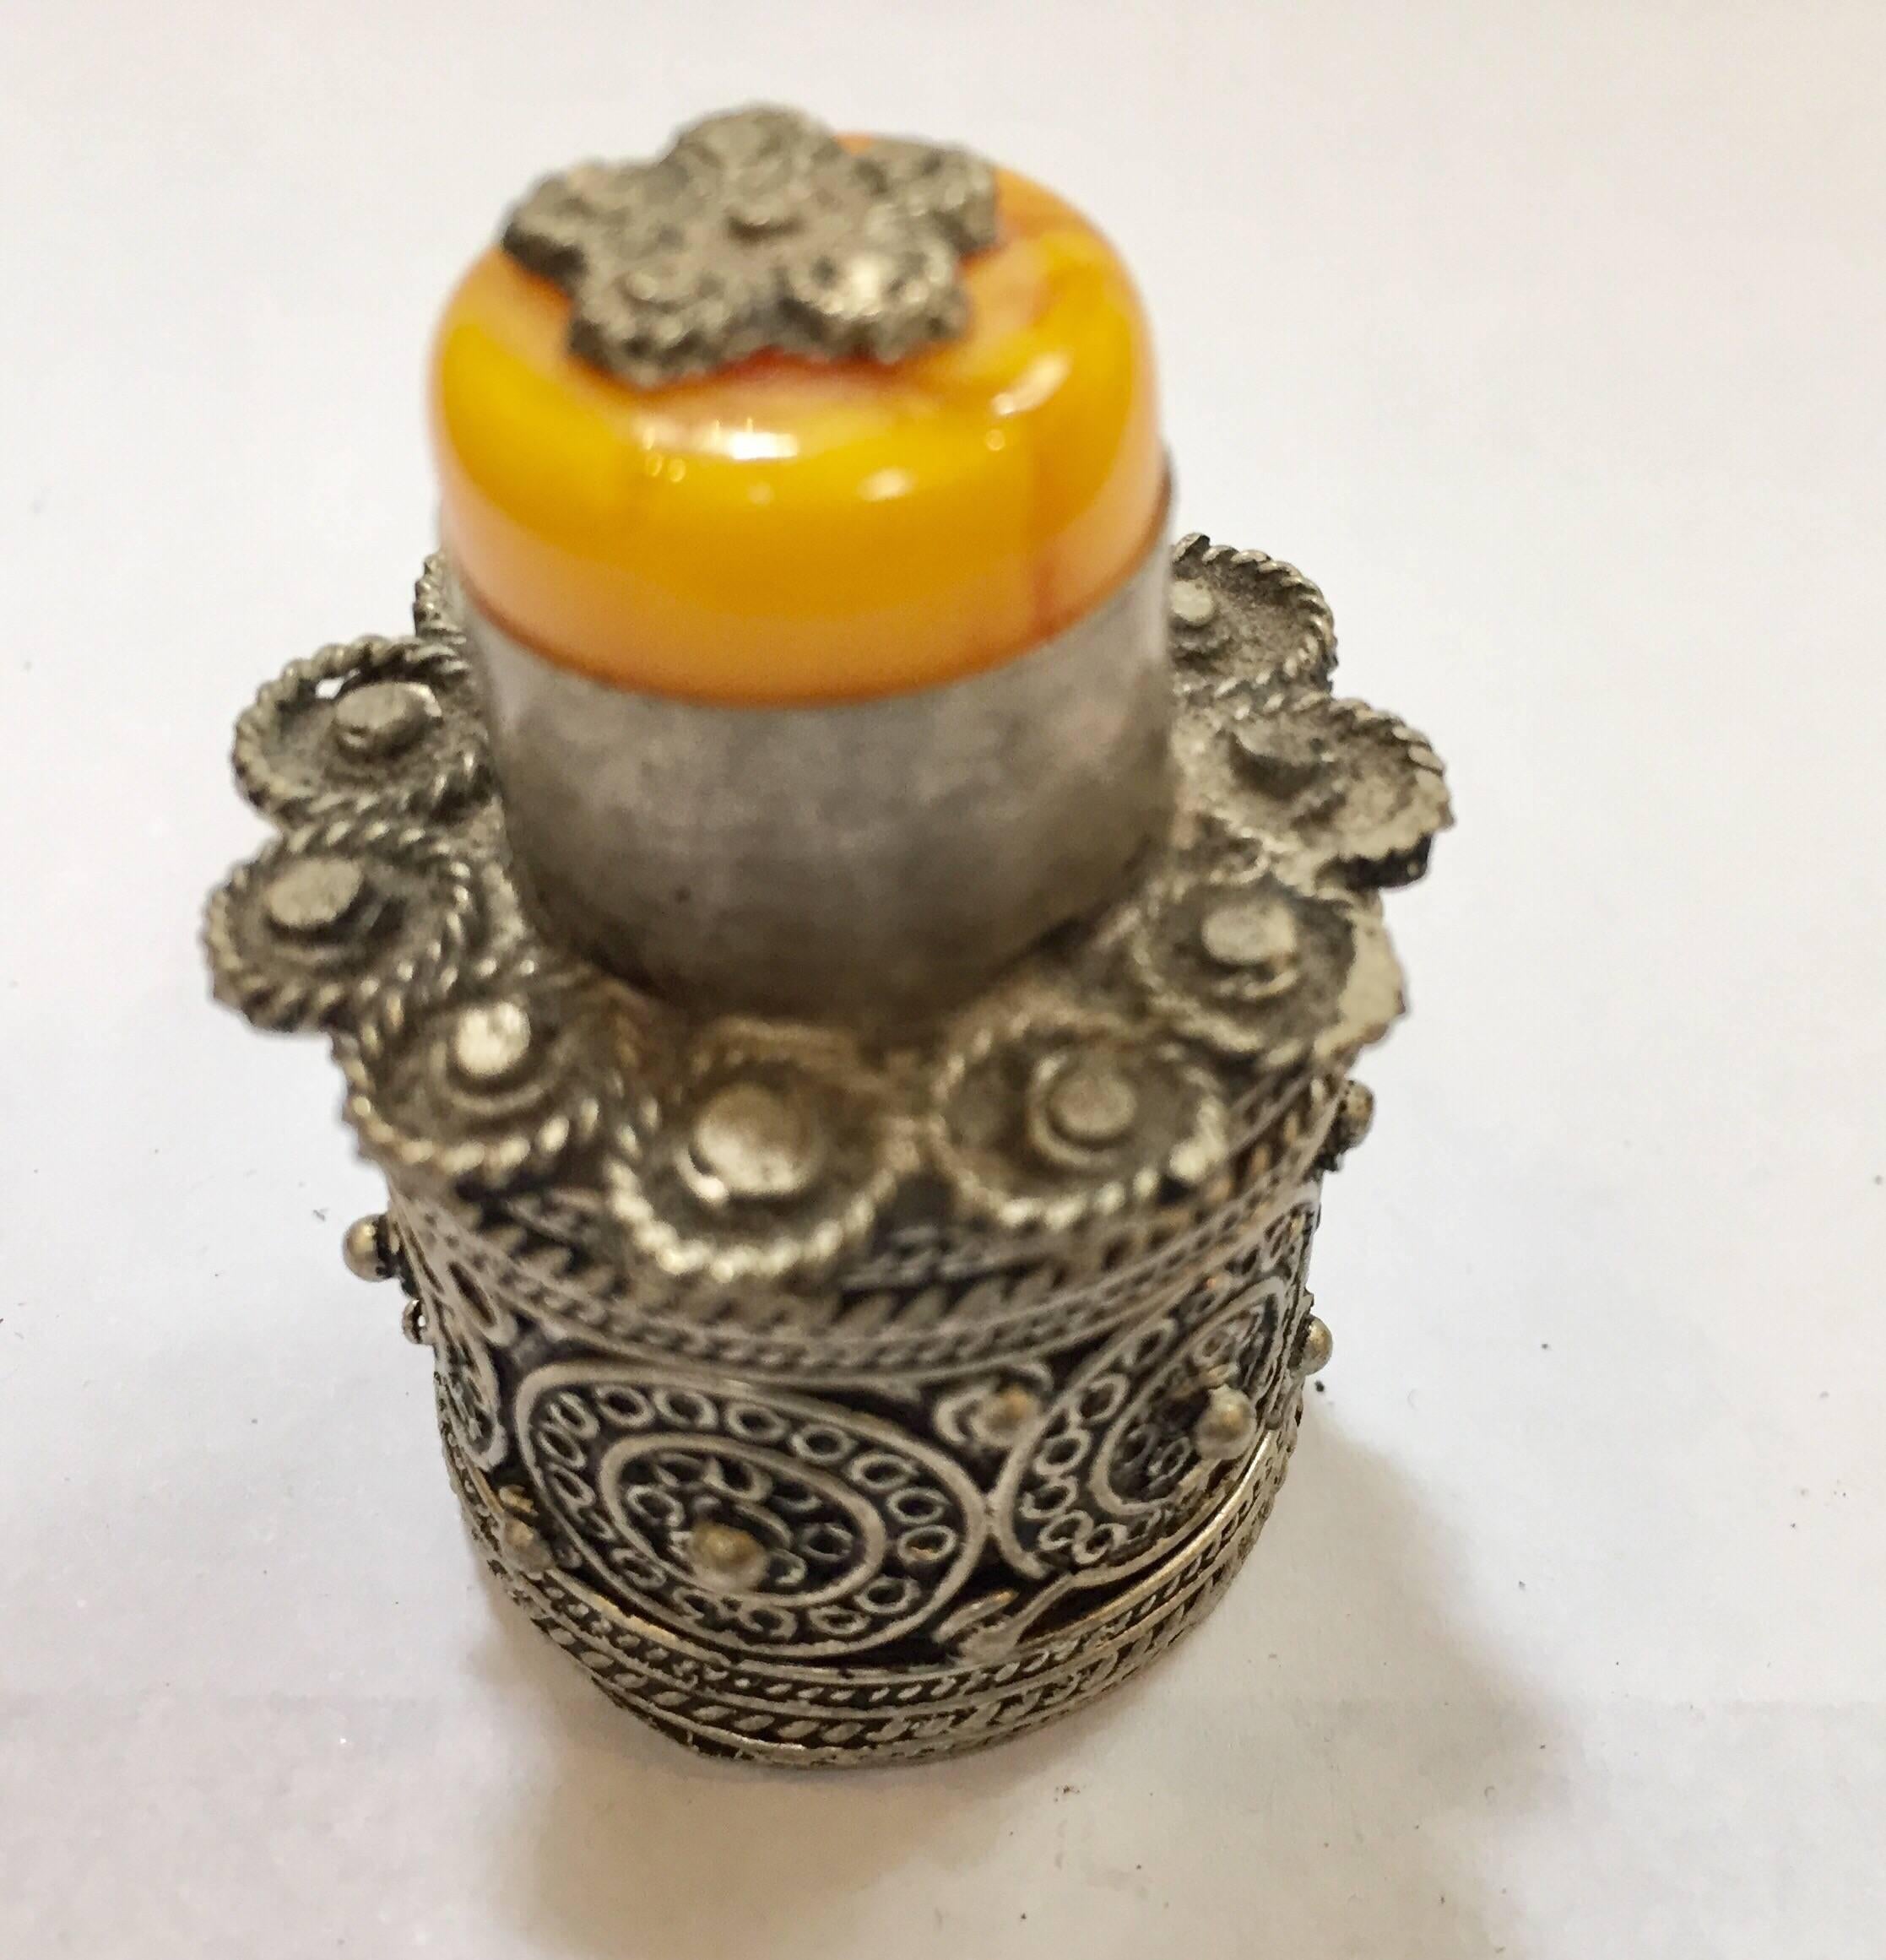 Boîte à couvercle en métal argenté de forme circulaire pour l'eye-liner khôl en poudre.
Conçue en deux parties détachées, finement travaillée à la main et décorée de motifs en volutes avec une pierre d'ambre jaune sur le couvercle supérieur et de